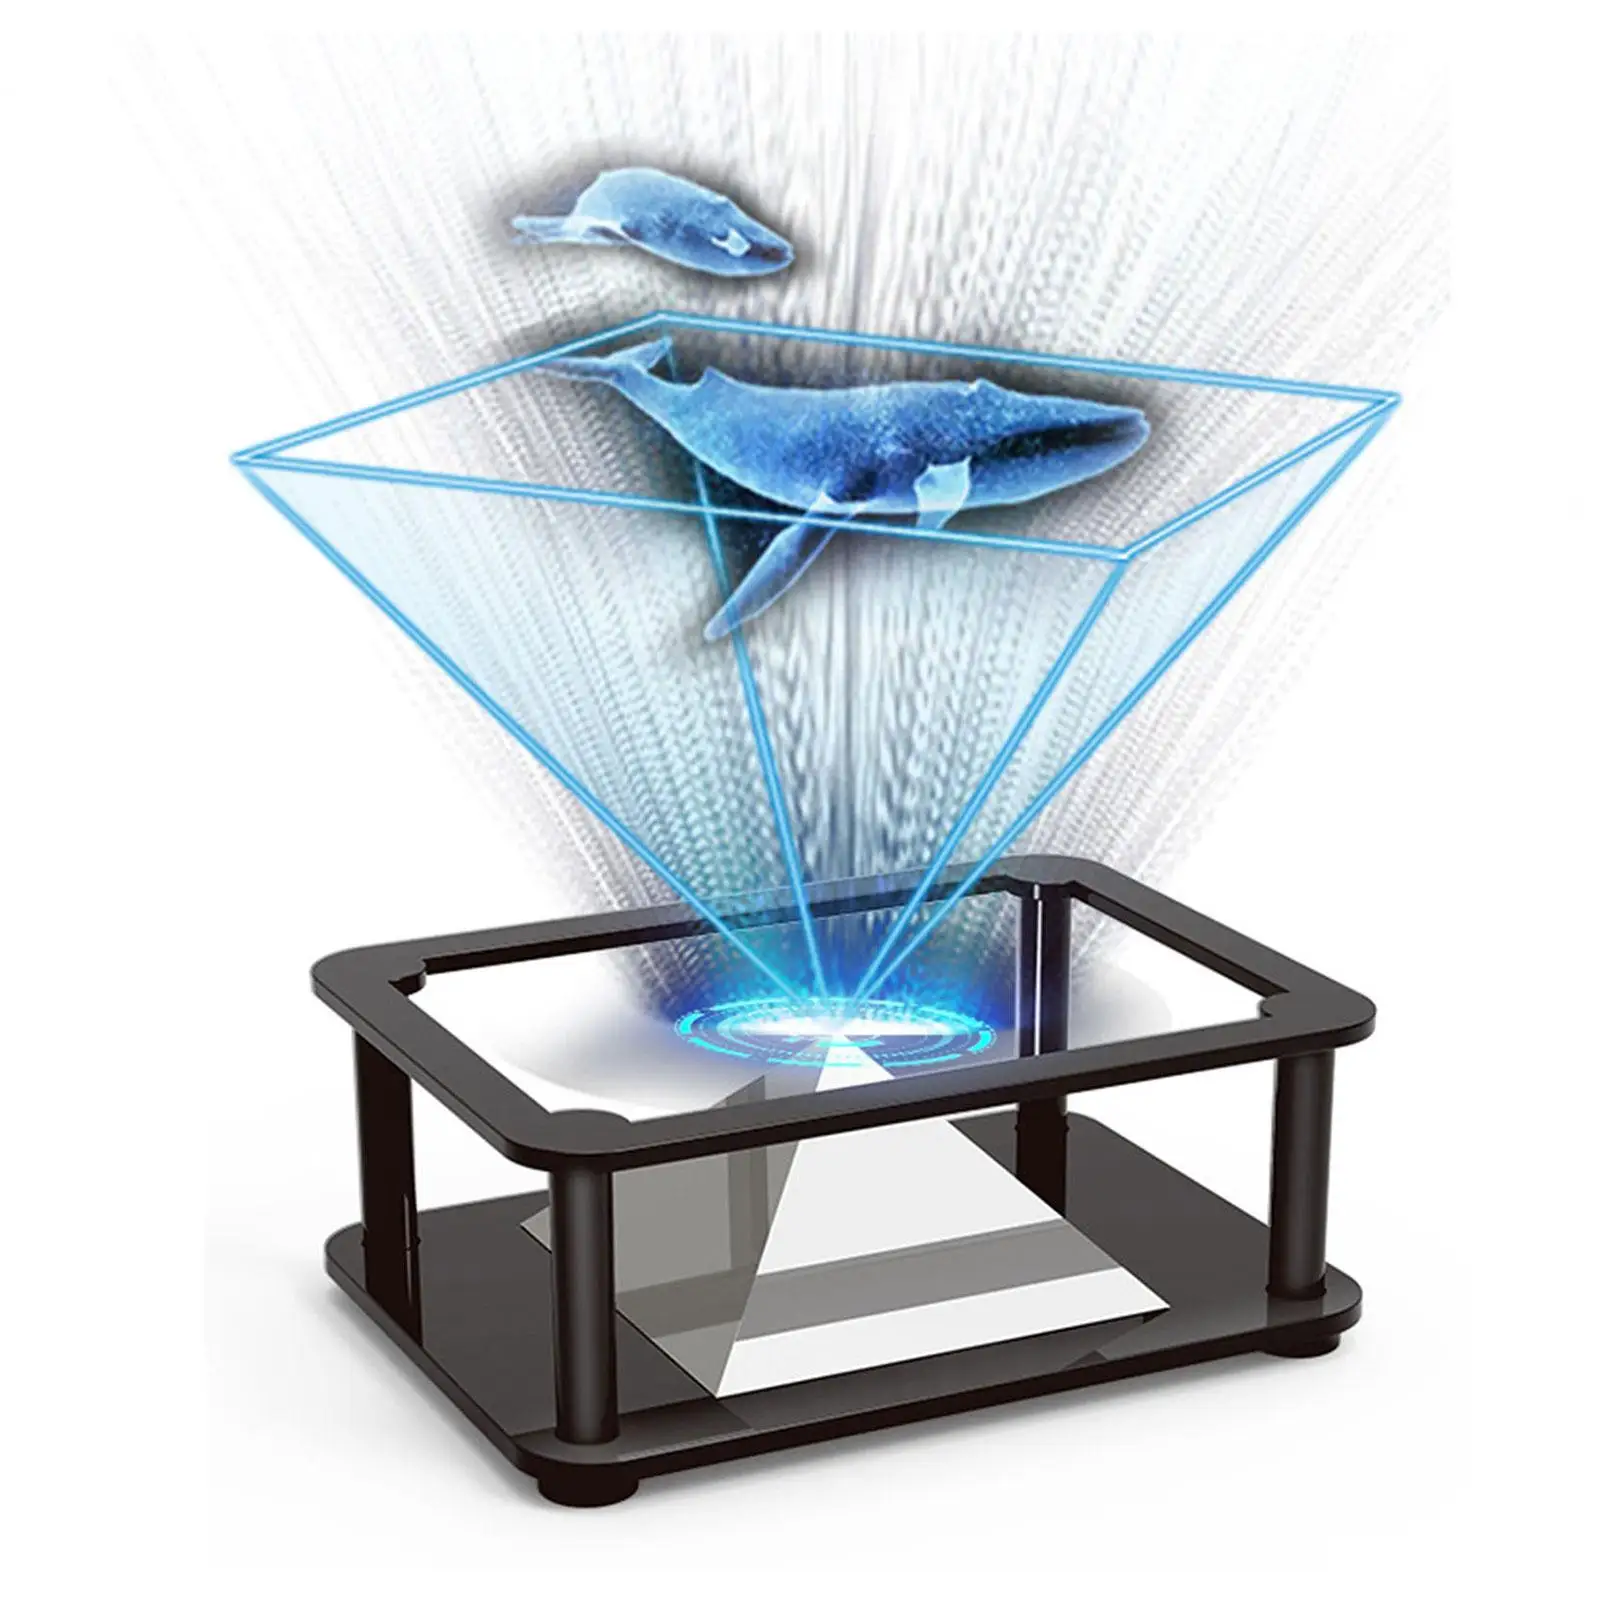 Proiettore olografico 3D piramide Display immagine tridimensionale  portatile per telefono cellulare DQ muslimate